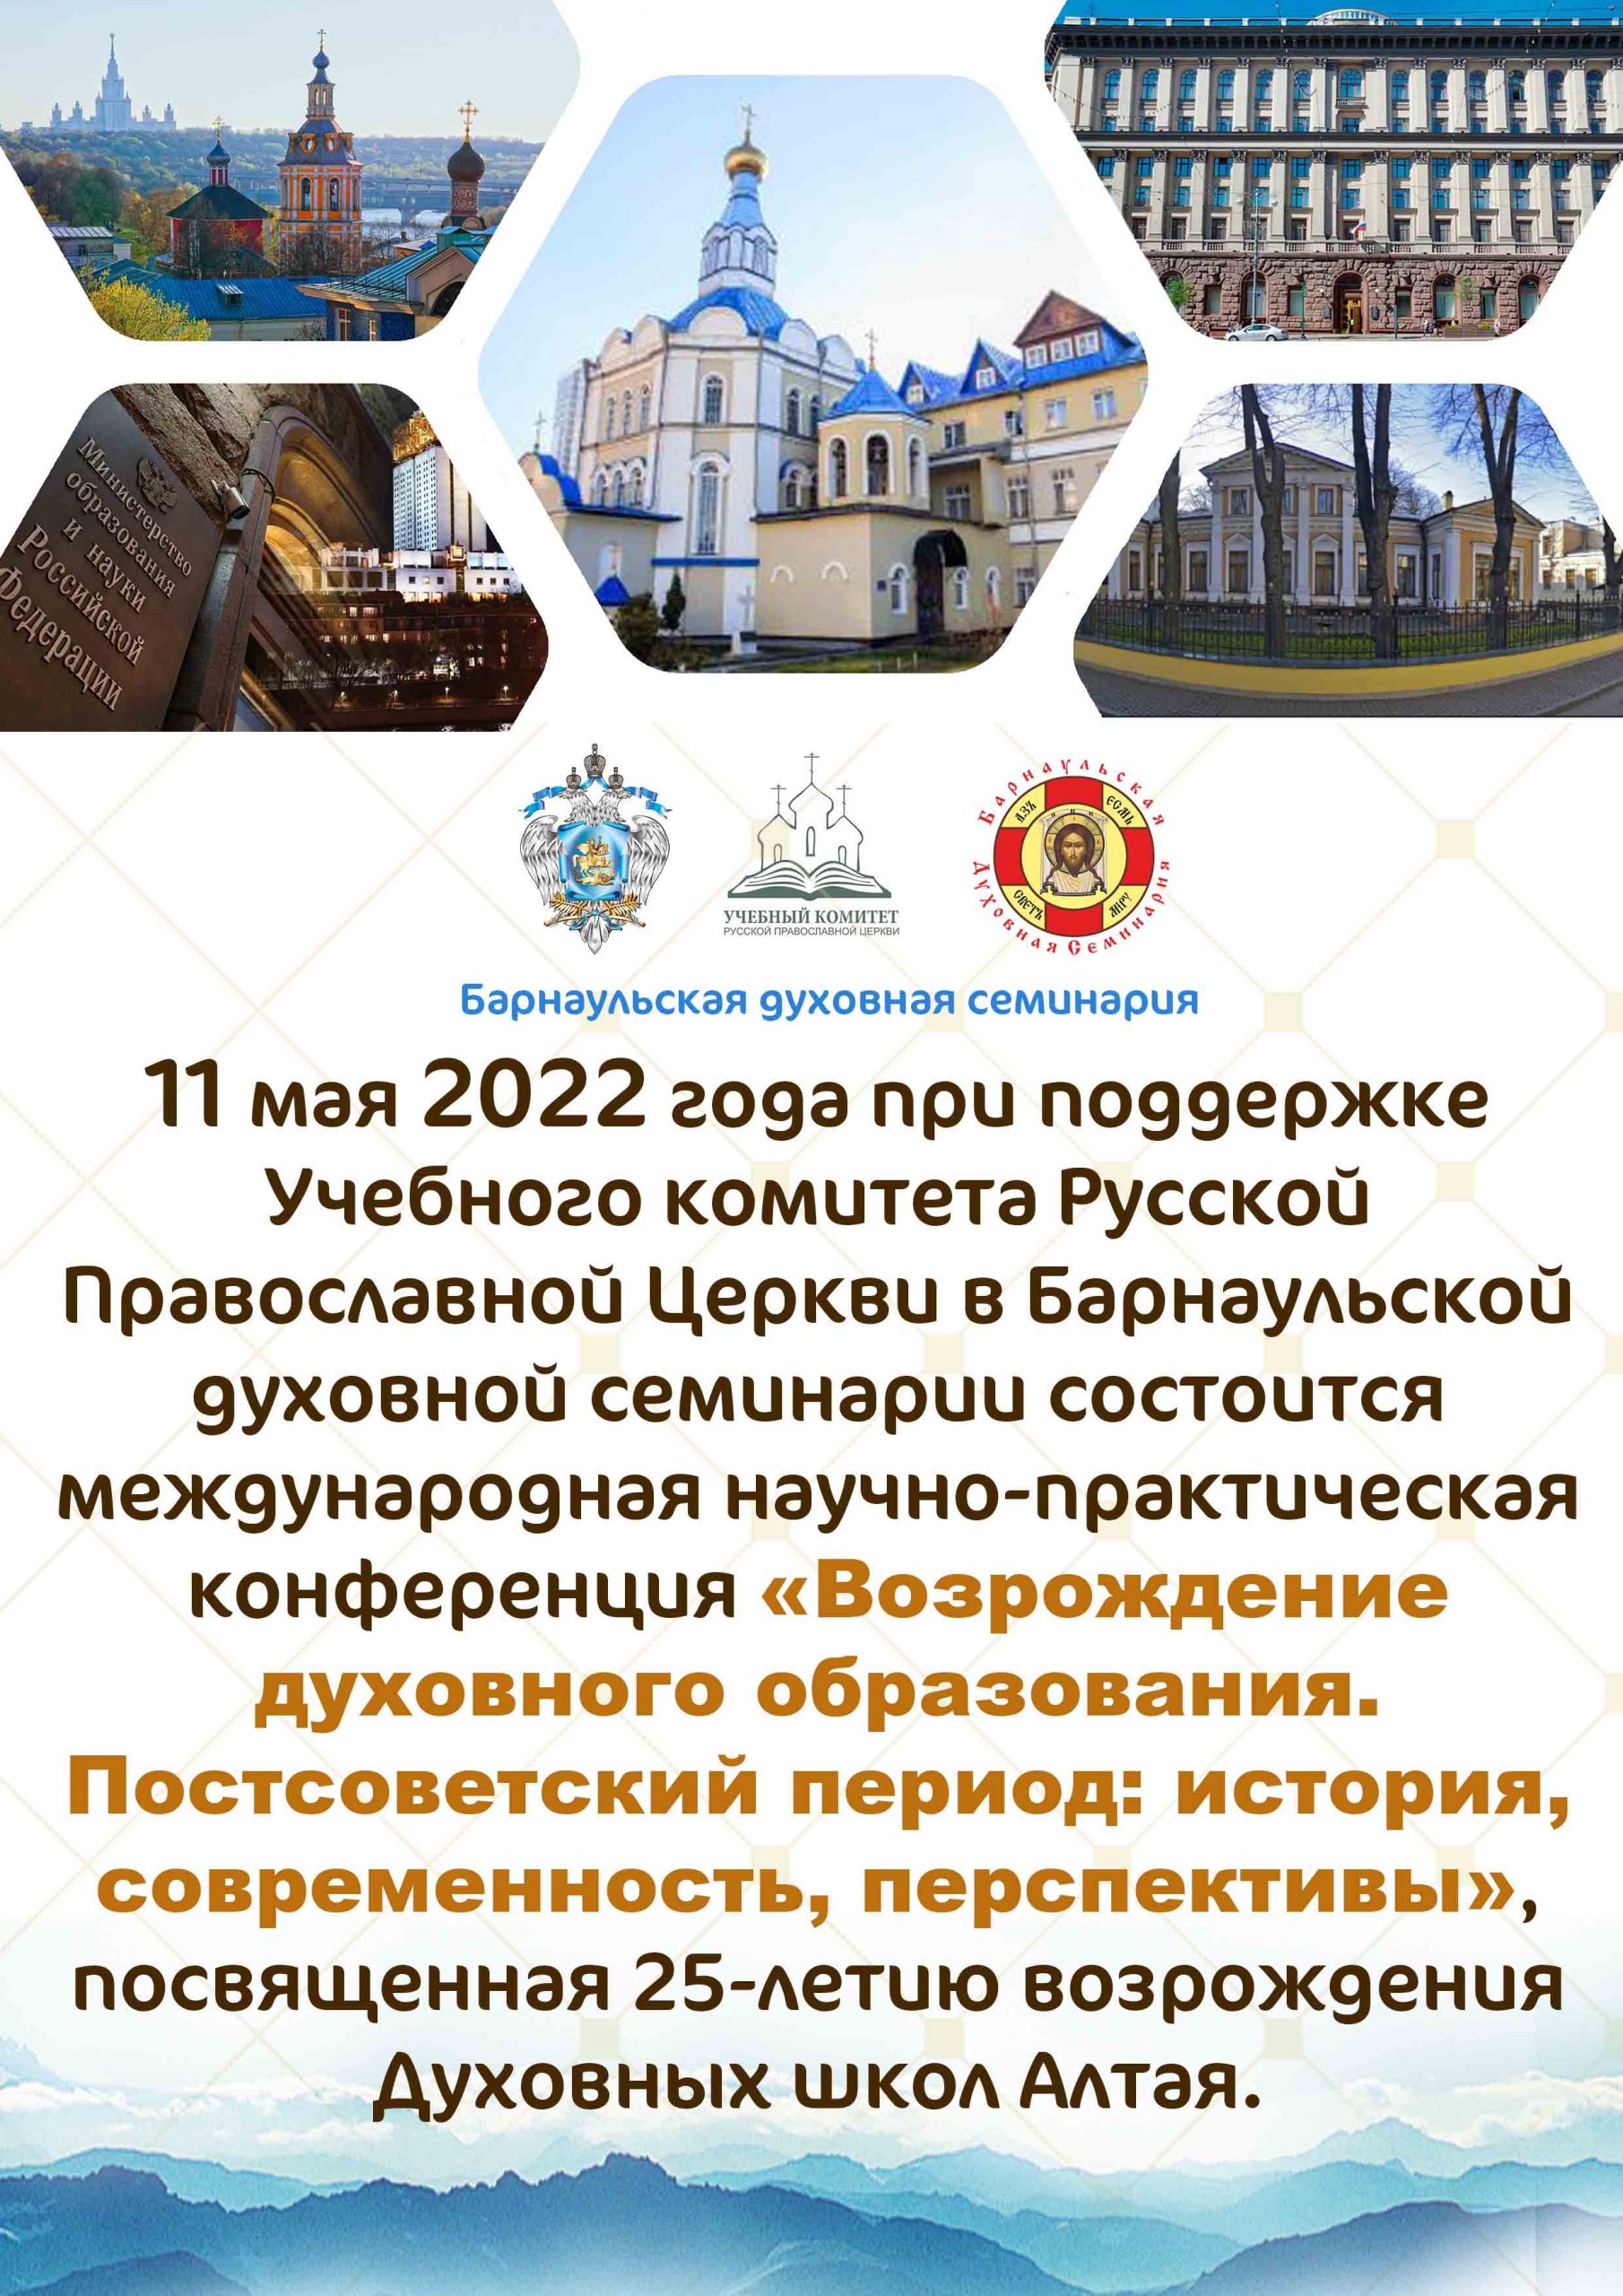 Конференция по вопросам духовного образования пройдёт в Барнаульской духовной семинарии